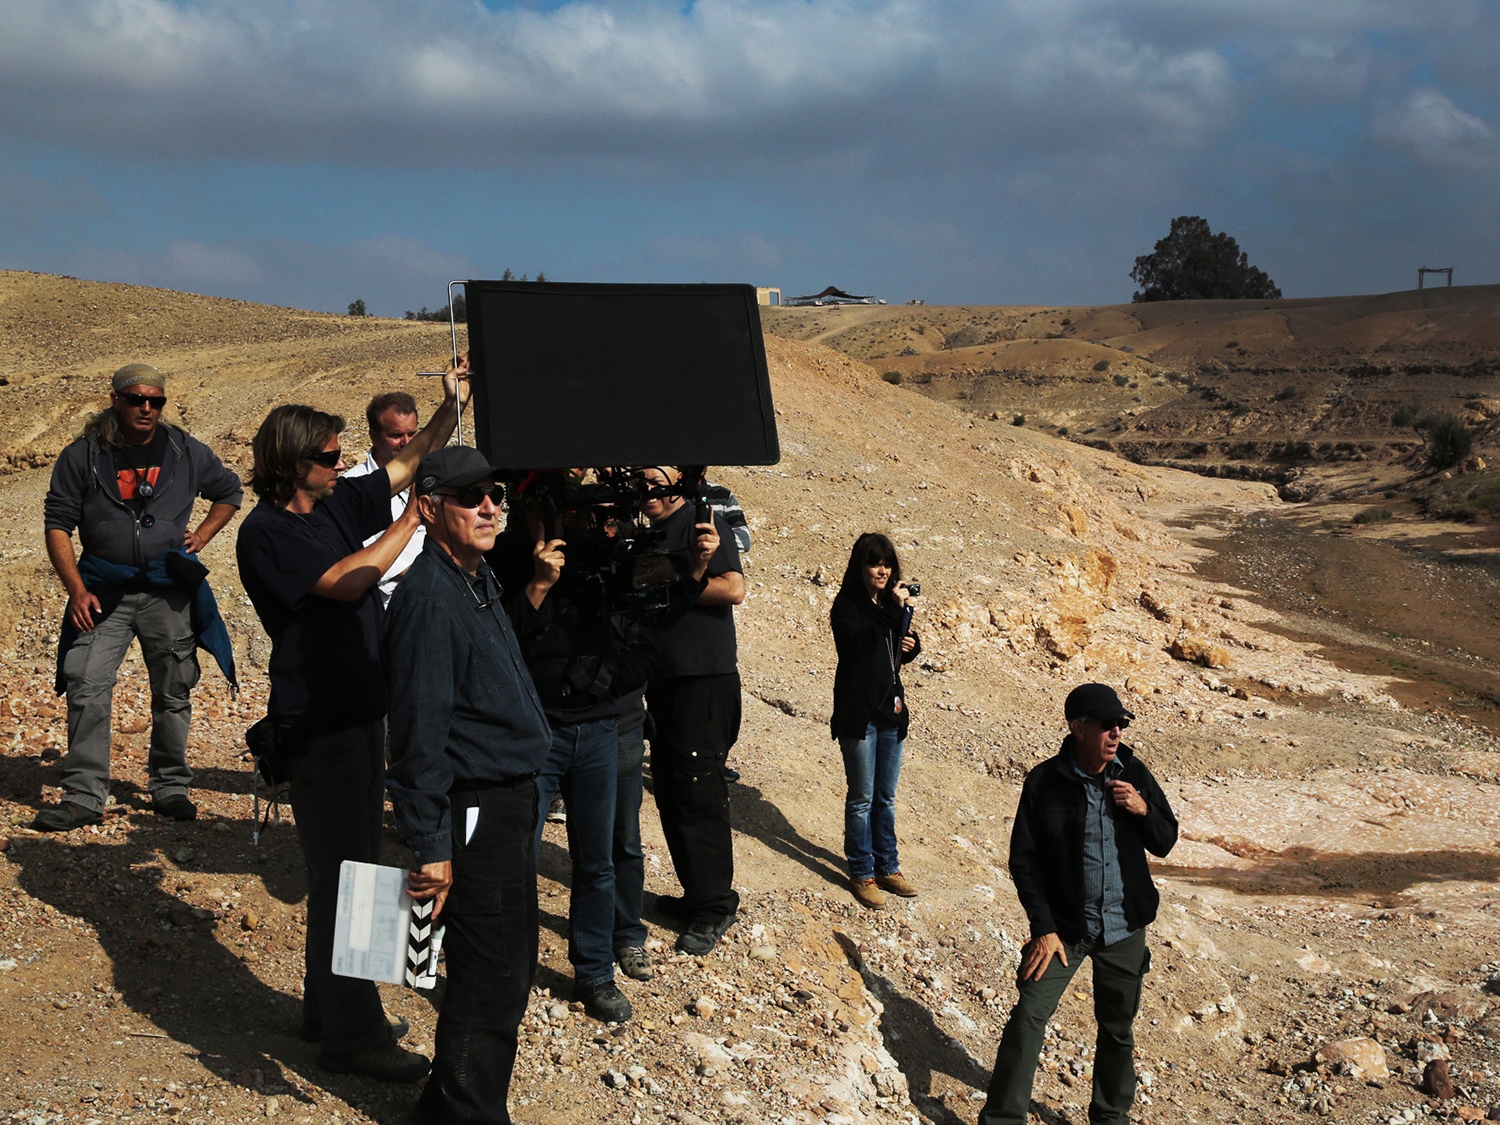 Werner Herzog steht vor seinem Kamerateam und hält eine Regieklappe. Er trägt eine dunkle Kappe, eine Sonnenbrille und dunkle Kleidung.